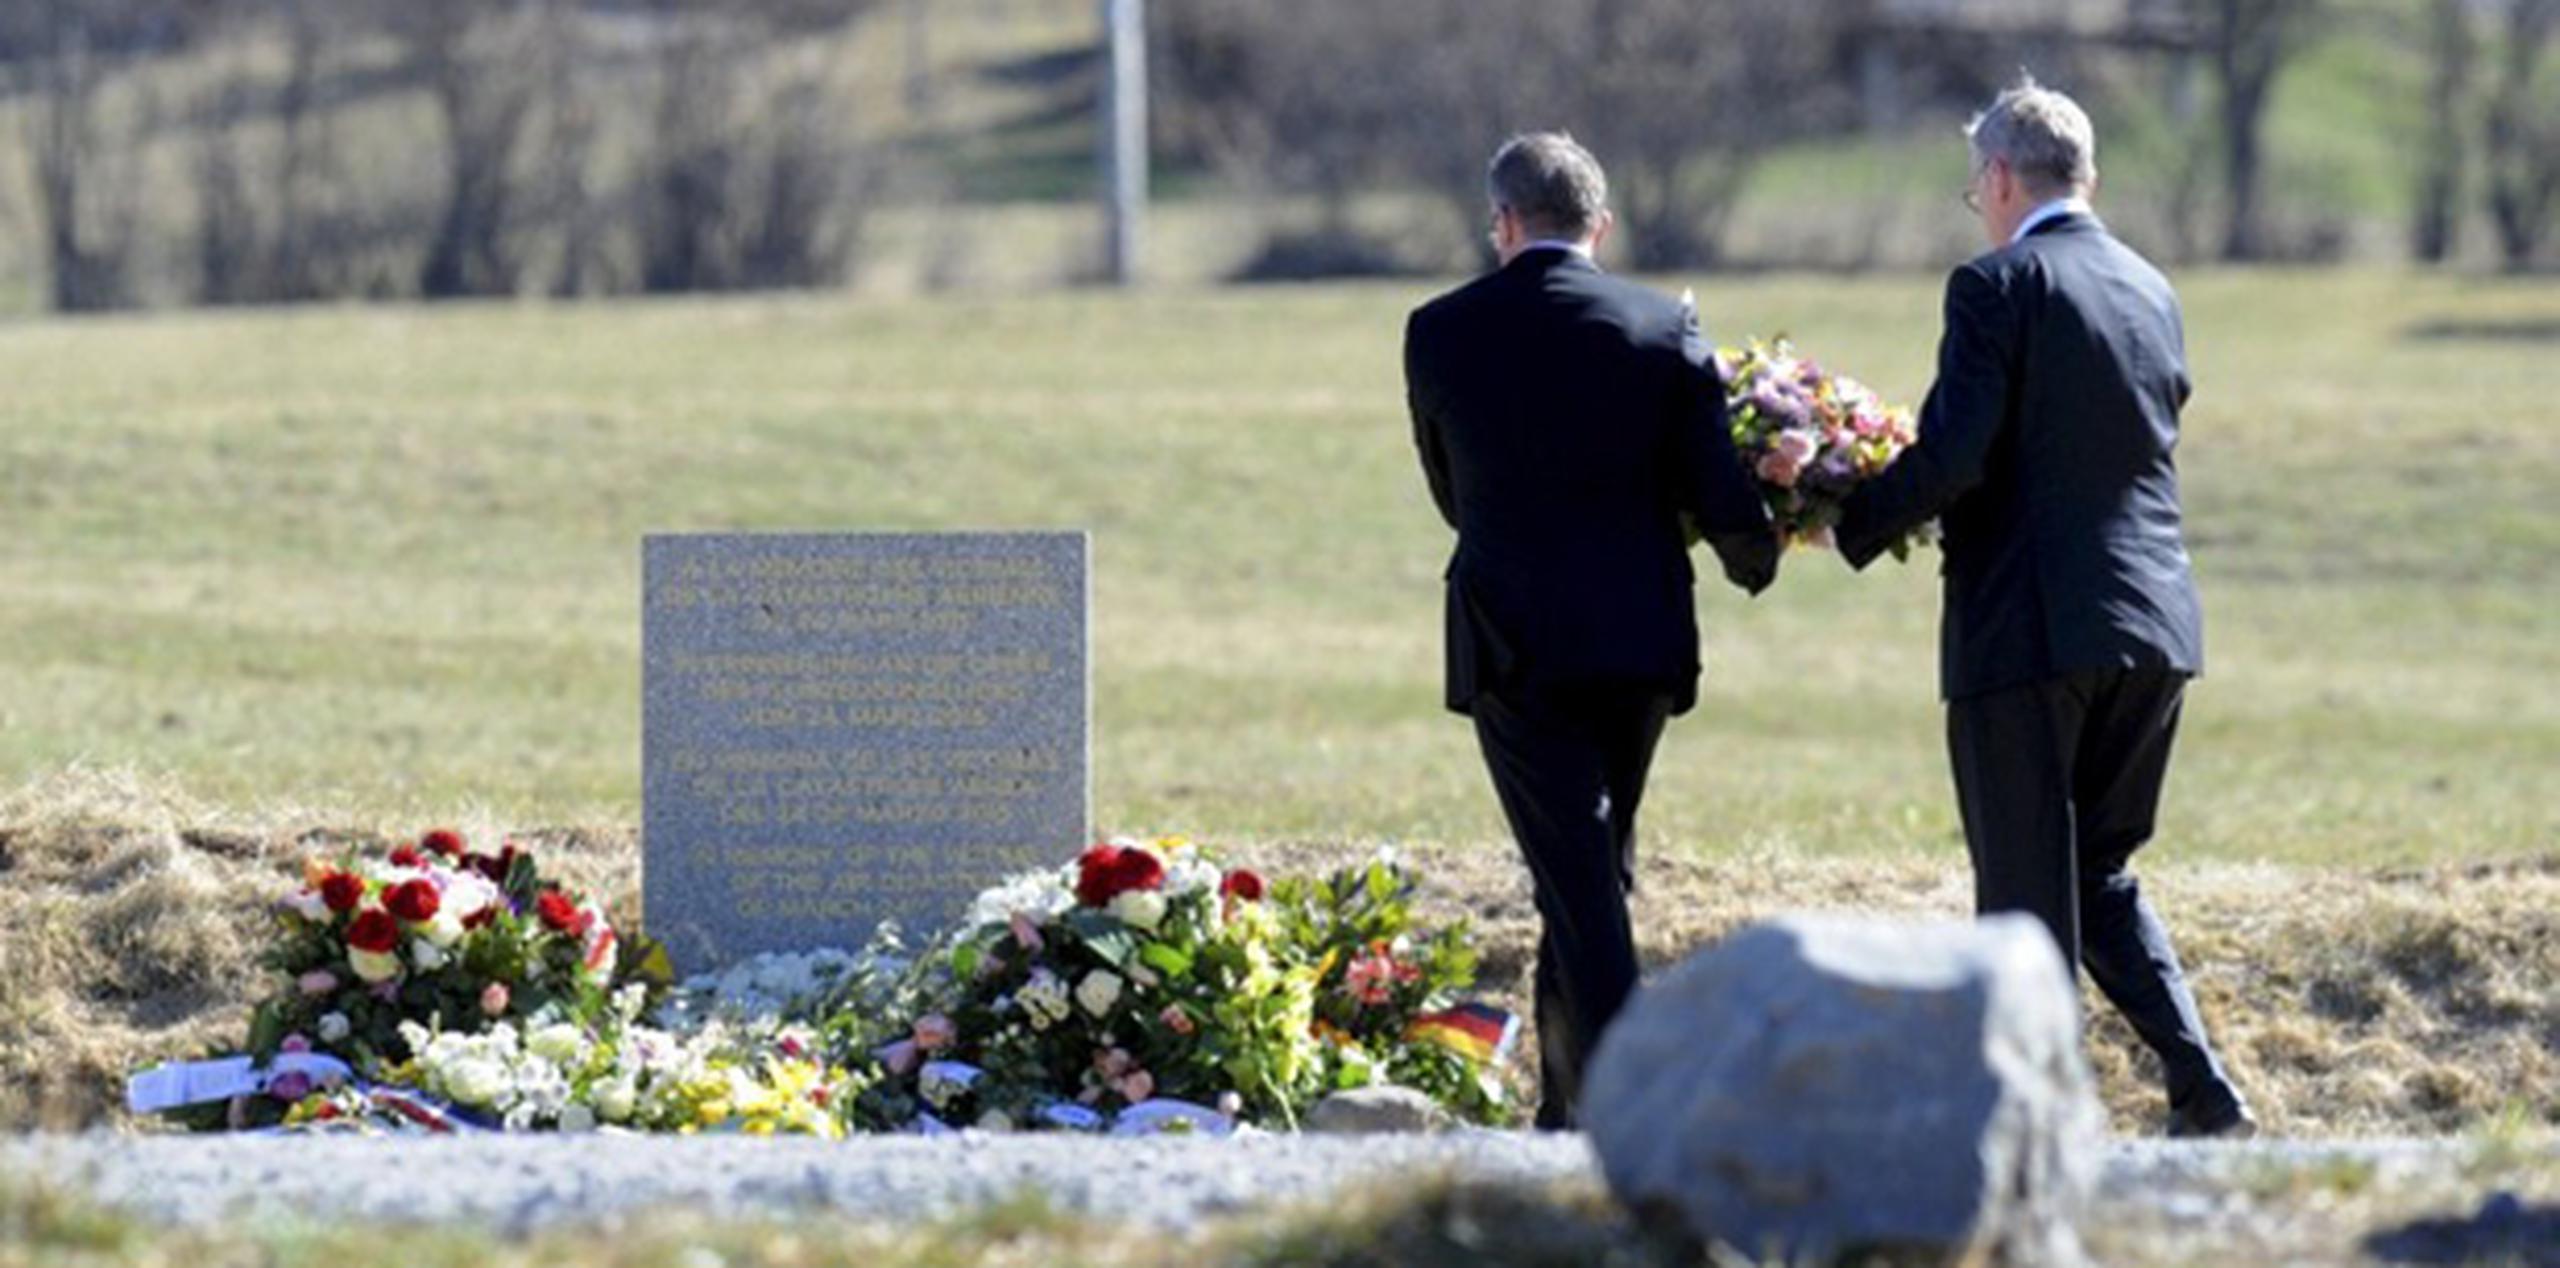 Los dos hombres depositaron flores y permanecieron en silencio frente al monolito de piedra que recuerda a las 150 víctimas del siniestro.  (AP)